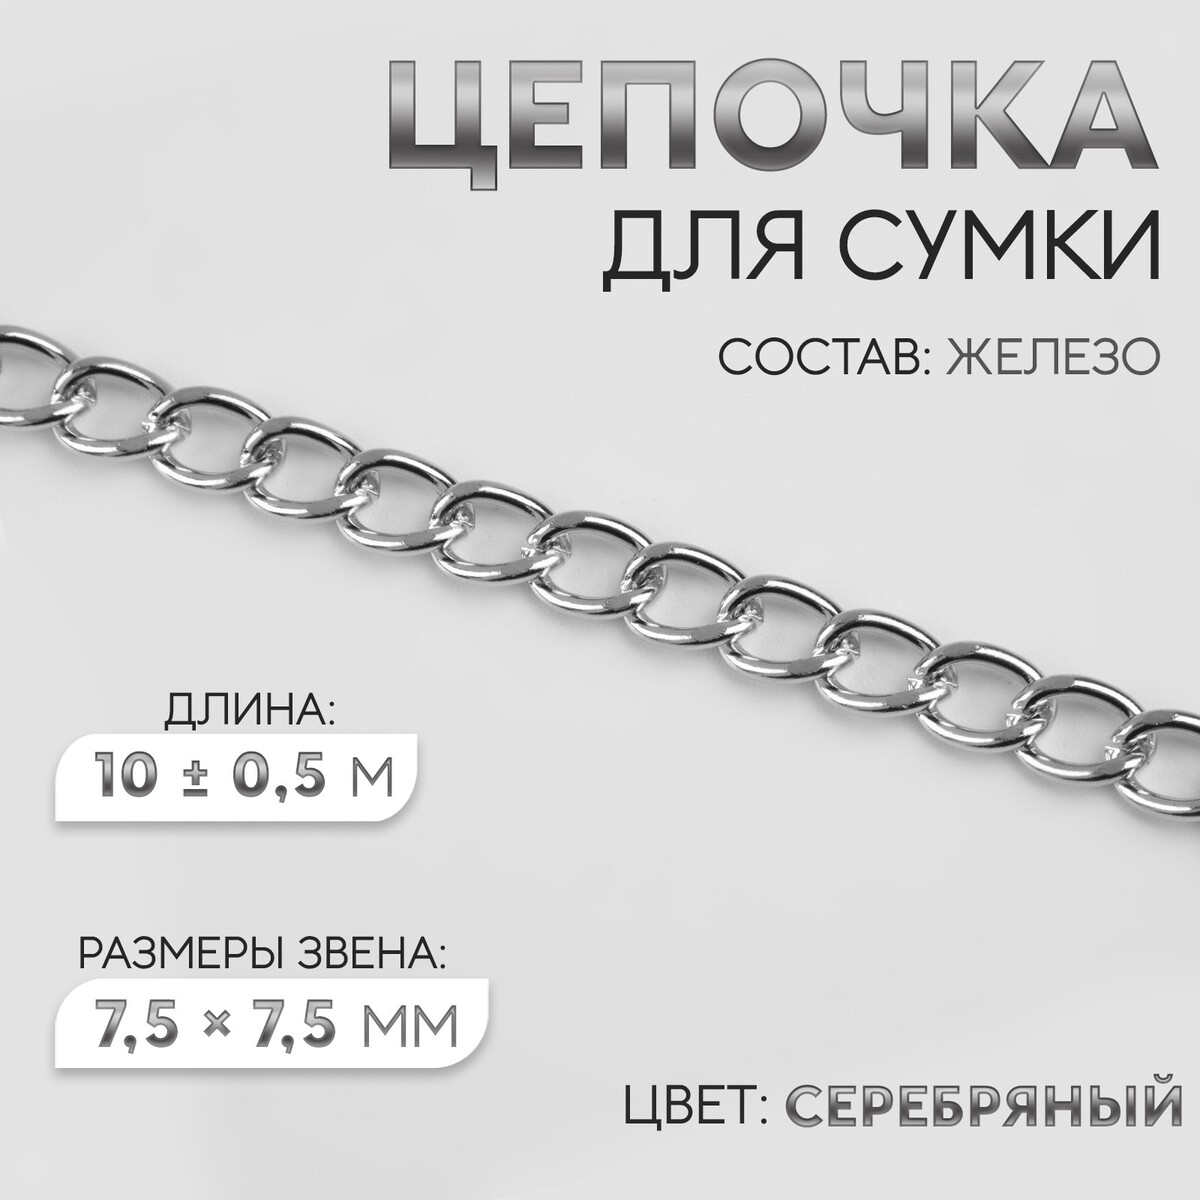 Цепочка для сумки, железная, 7,5 × 7,5 мм, 10 ± 0,5 м, цвет серебряный цепочка для сумки железная 6 2 × 8 8 мм 10 ± 0 5 м серебряный